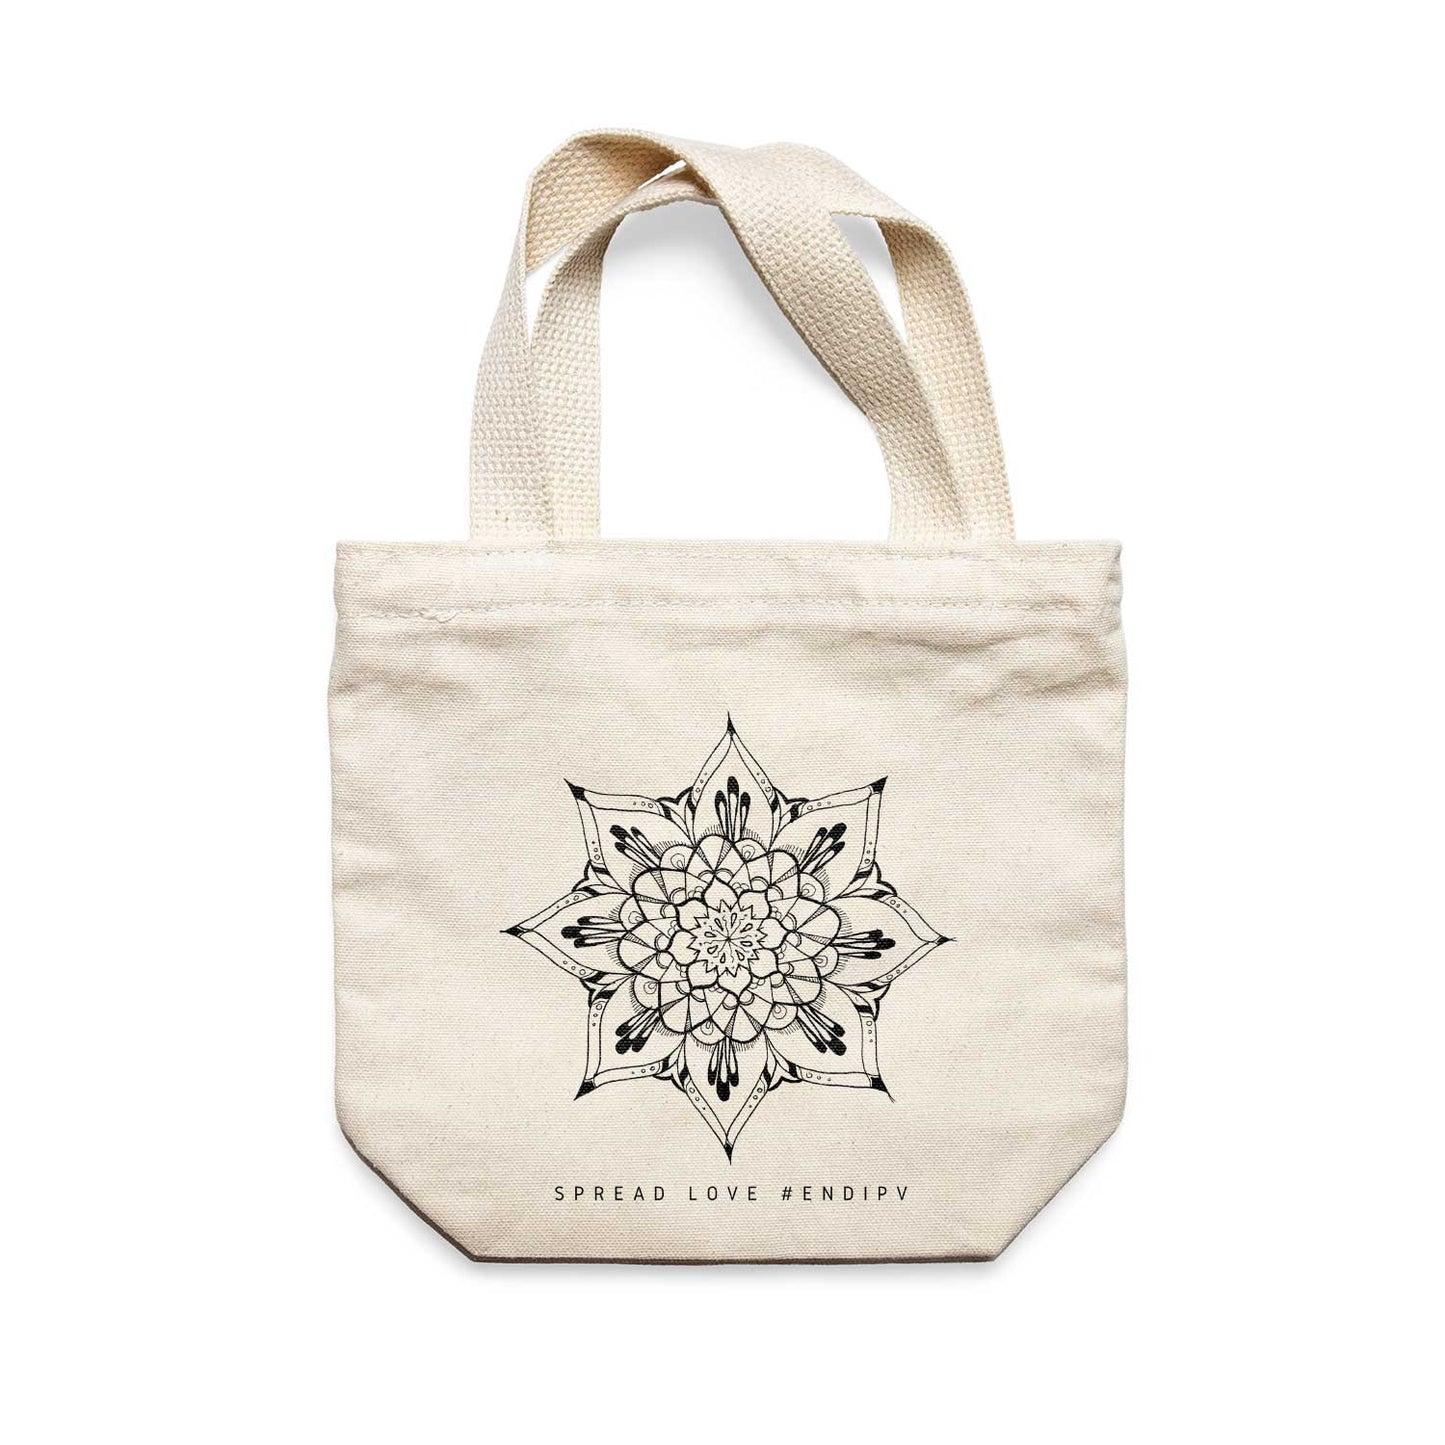 תיק צד לנשים וגברים מבד 100% כותנה טבעית בעיצוב Mandala - Zala Tote Bag מציור מקורי של גאיה